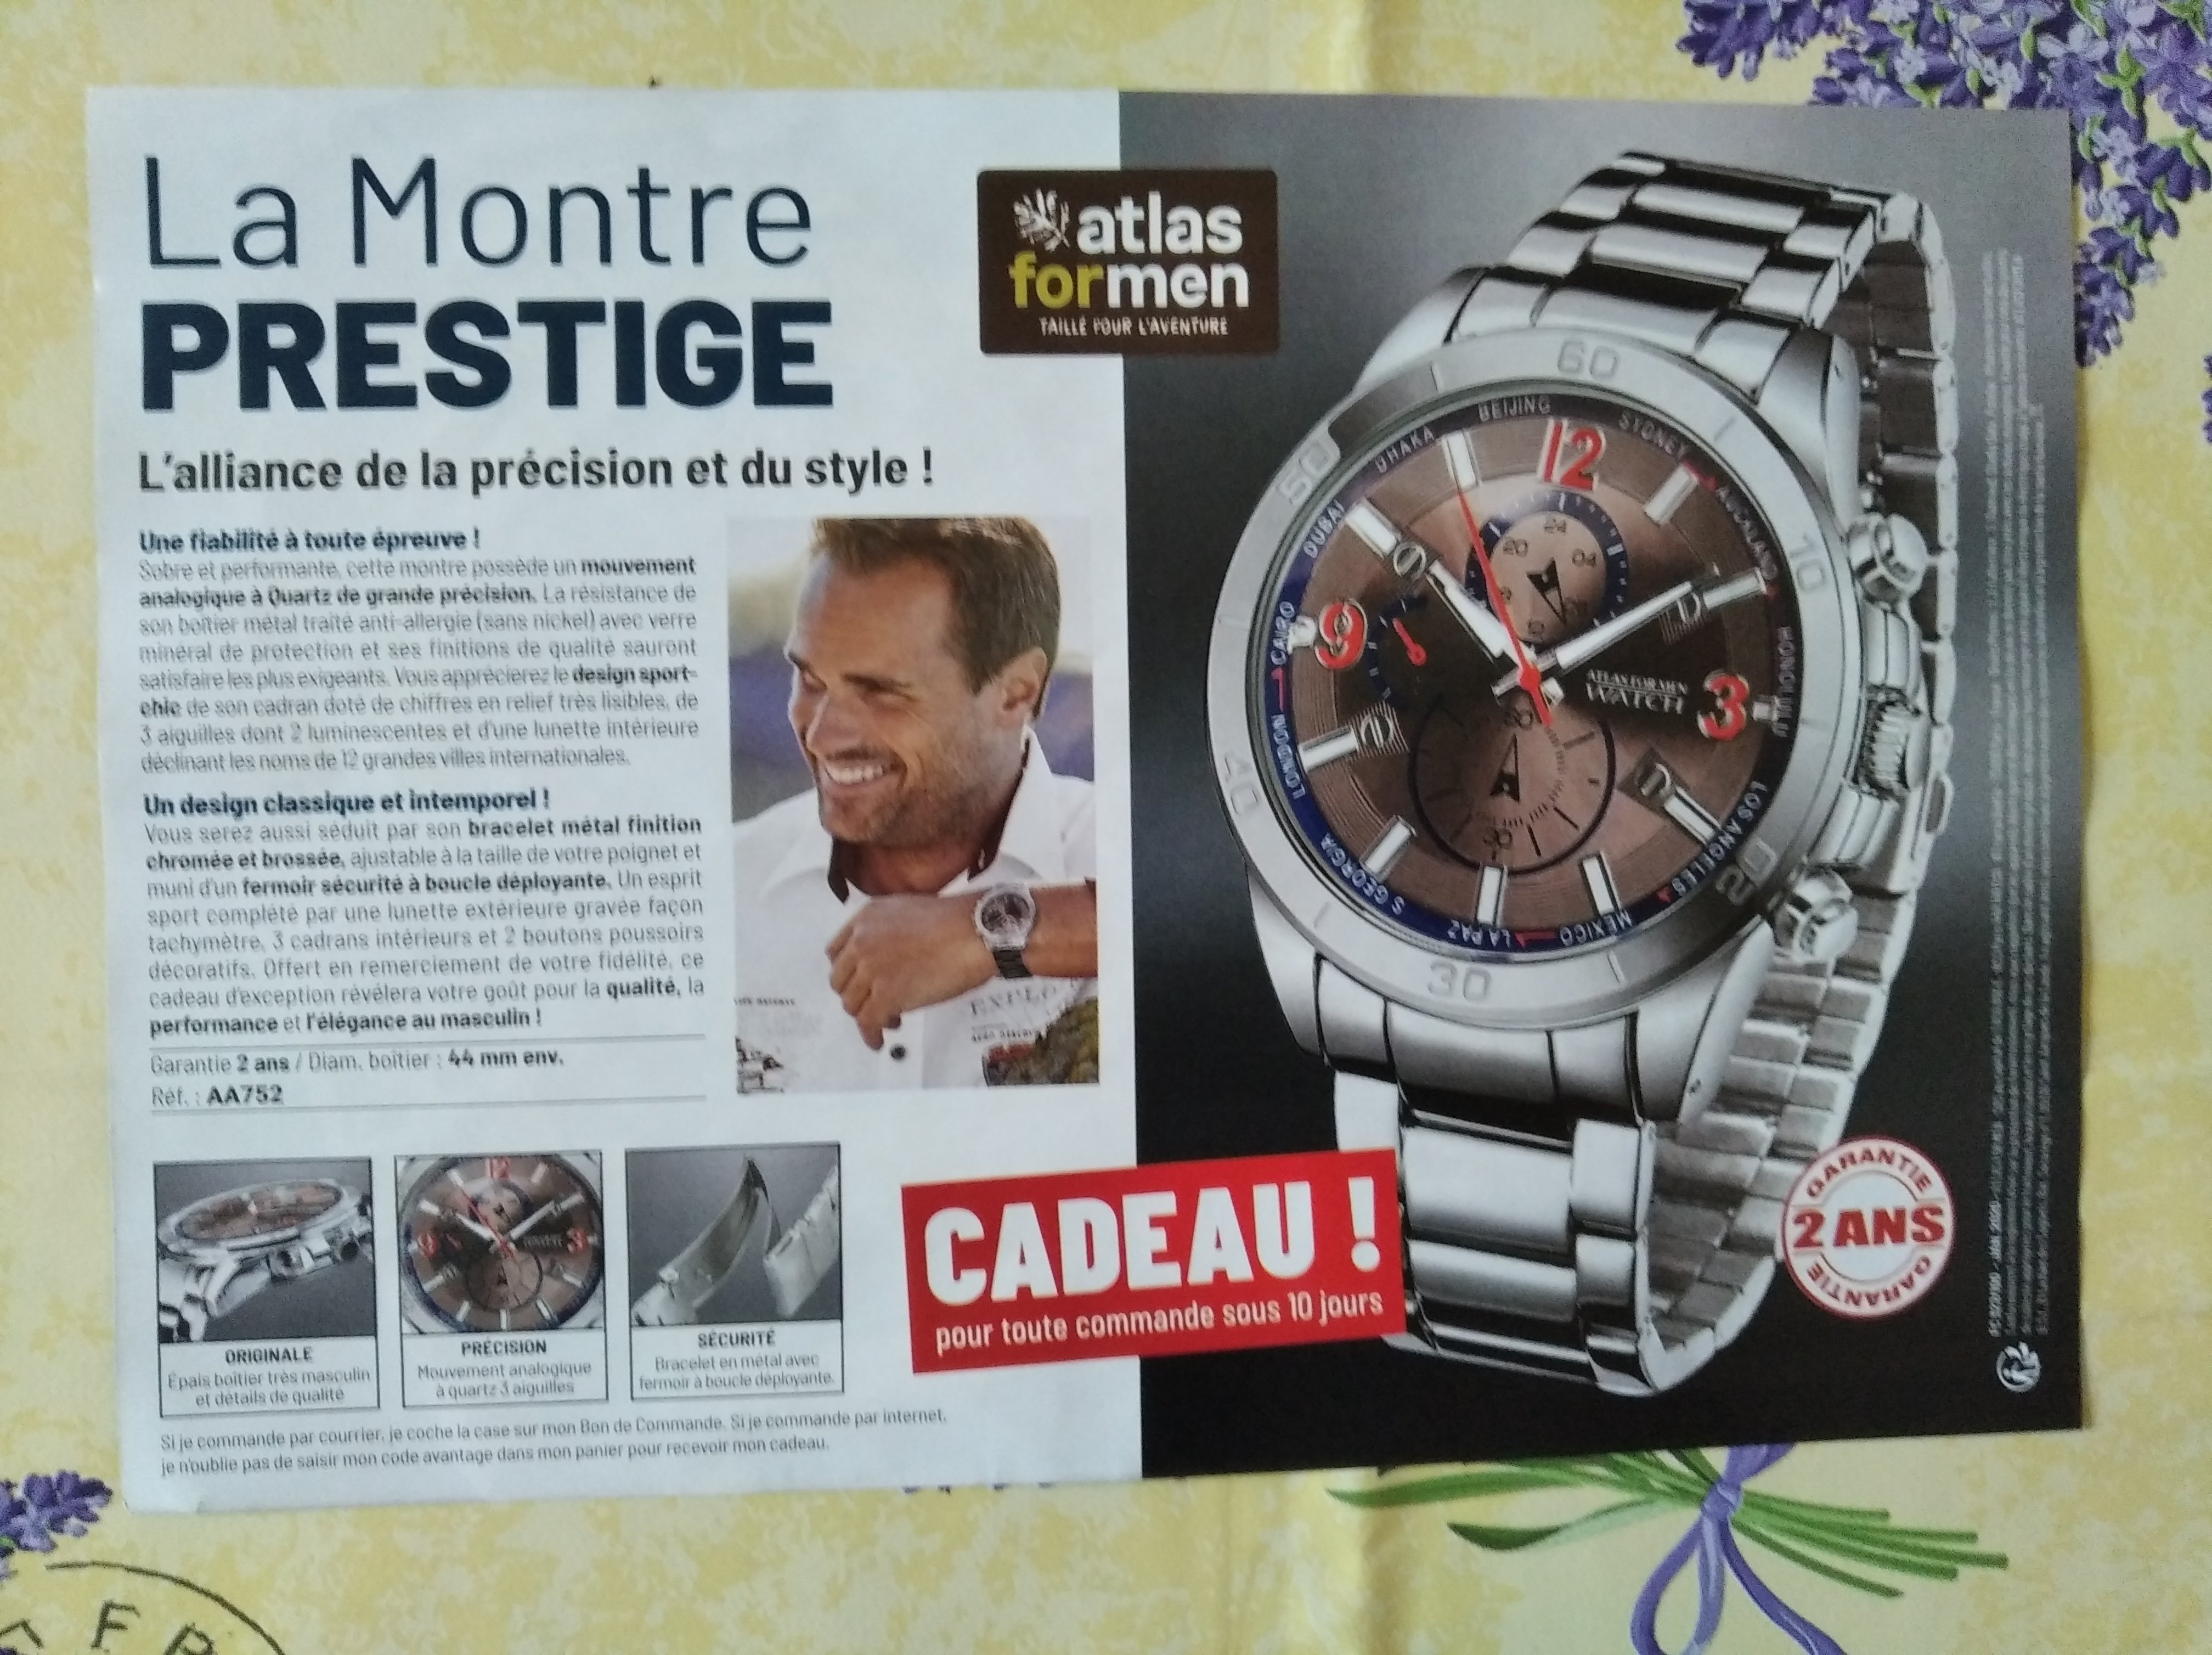 code promo - Atlas For Men une montre Prestige en cadeau fdp payant